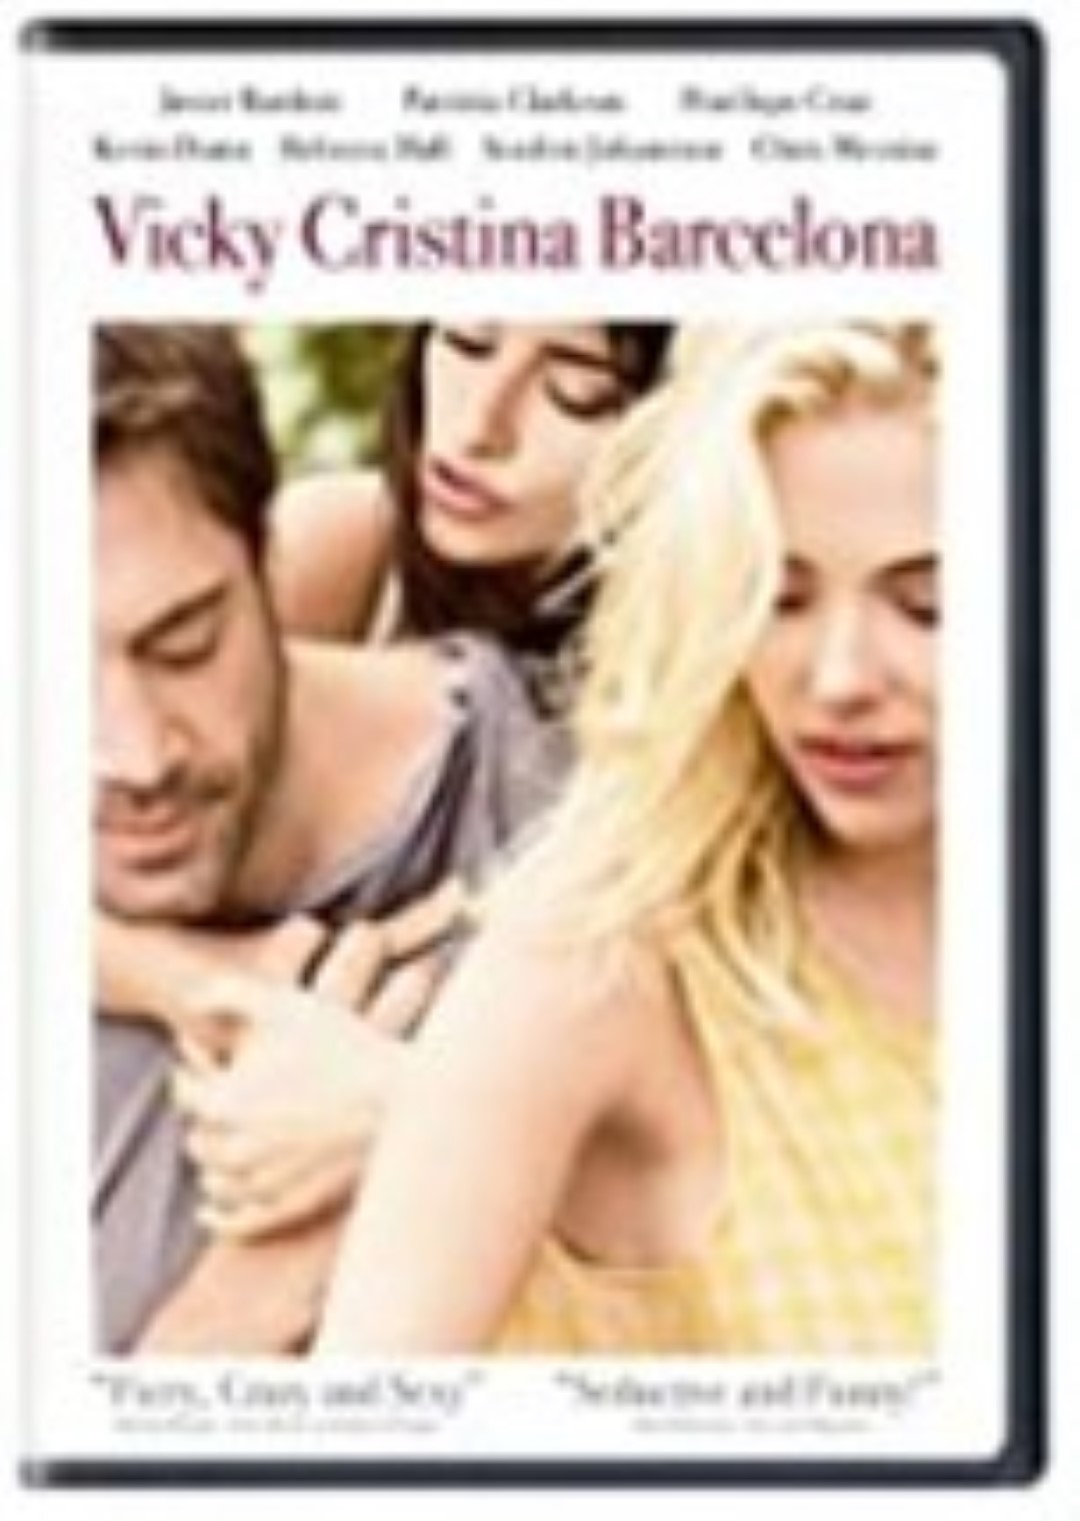 Vicky cristina barcelona dvd  large 